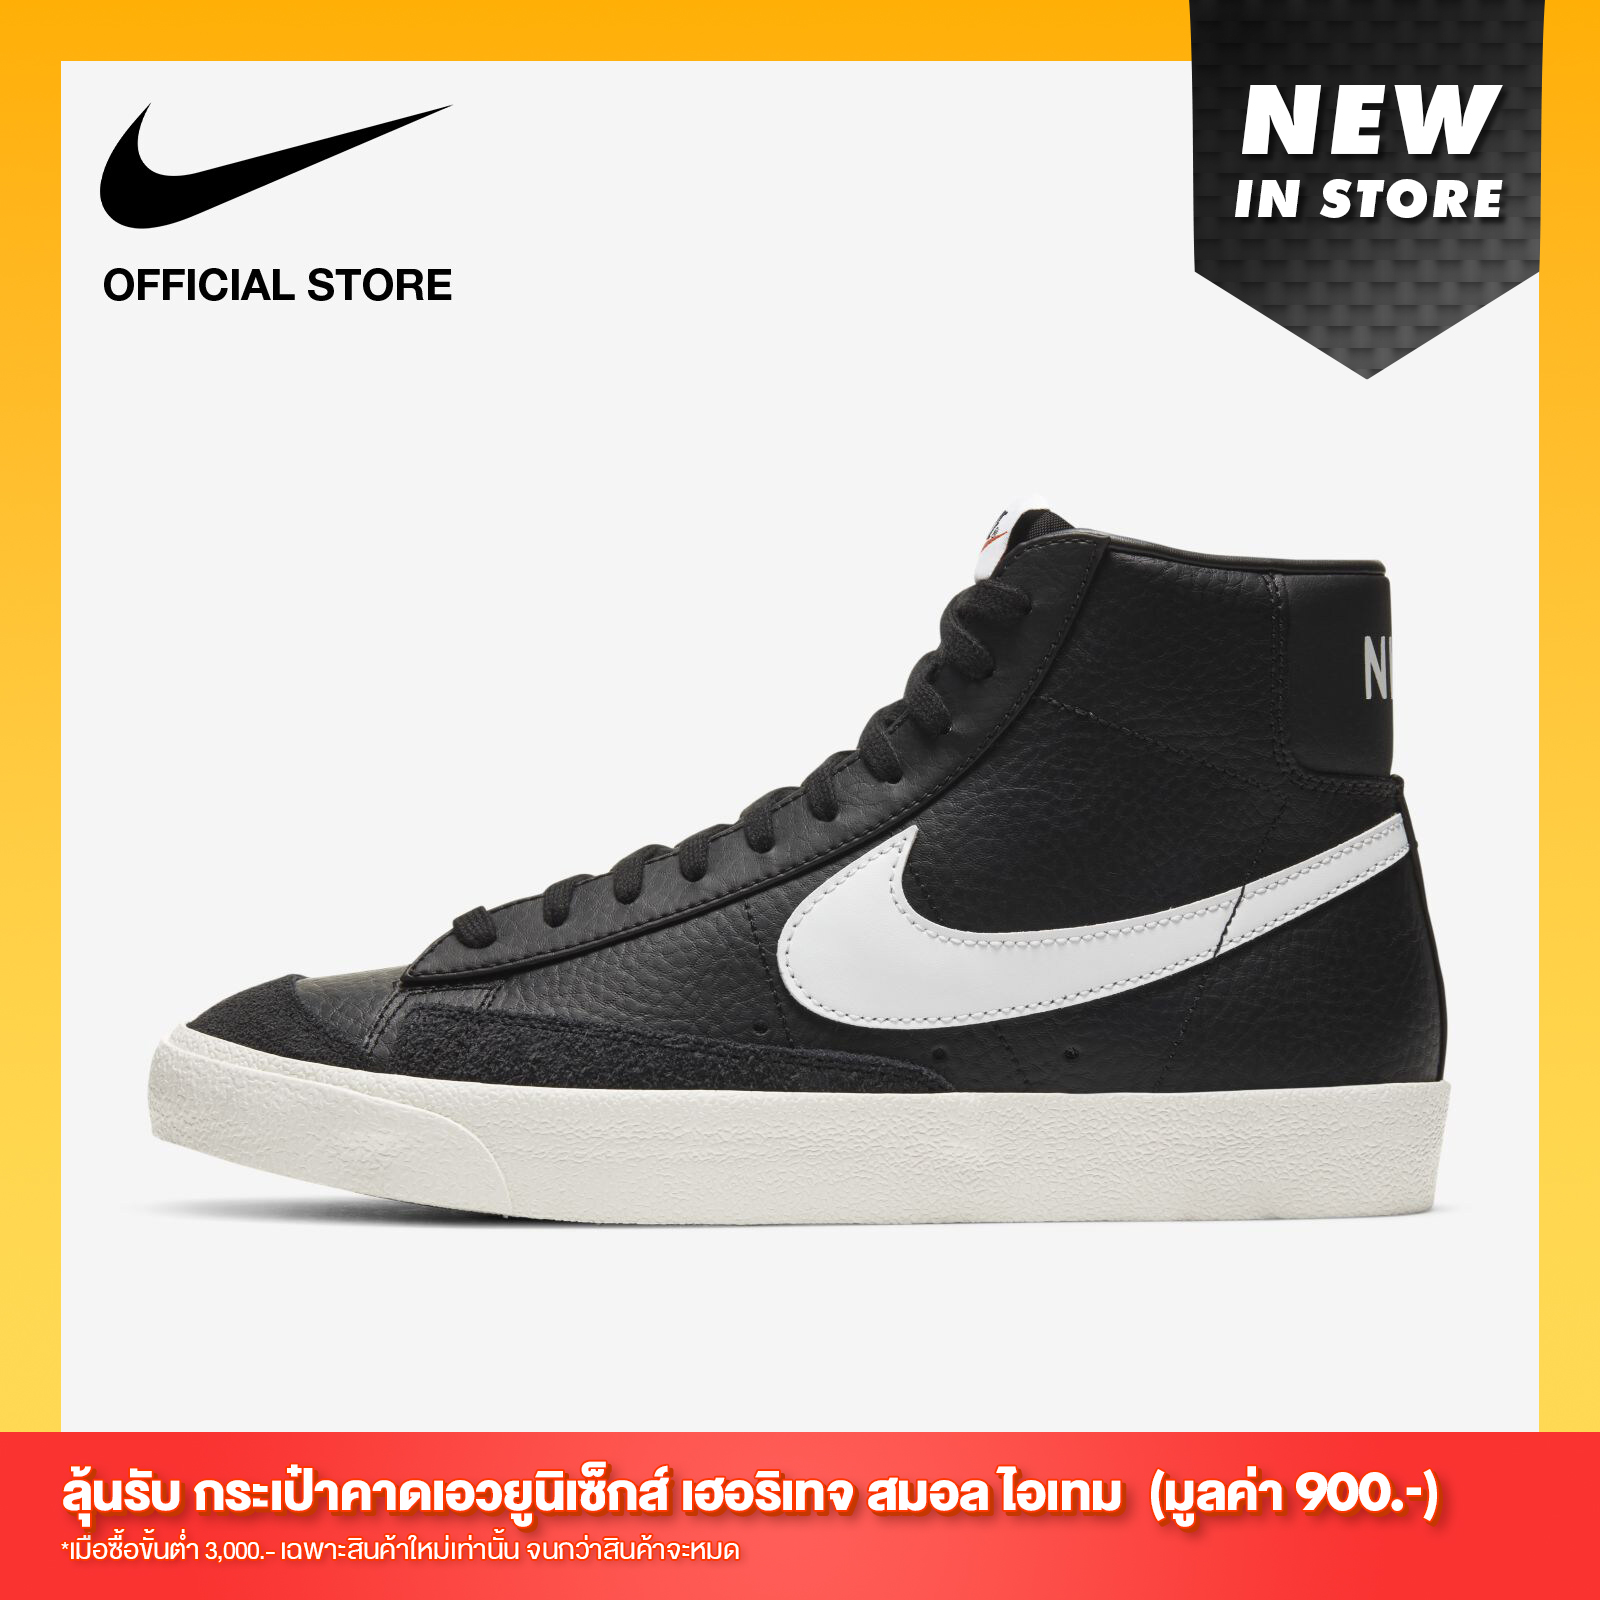 Vintage Nike ราคาถูก ซื้อออนไลน์ที่ - ต.ค. 2022 | Lazada.co.th